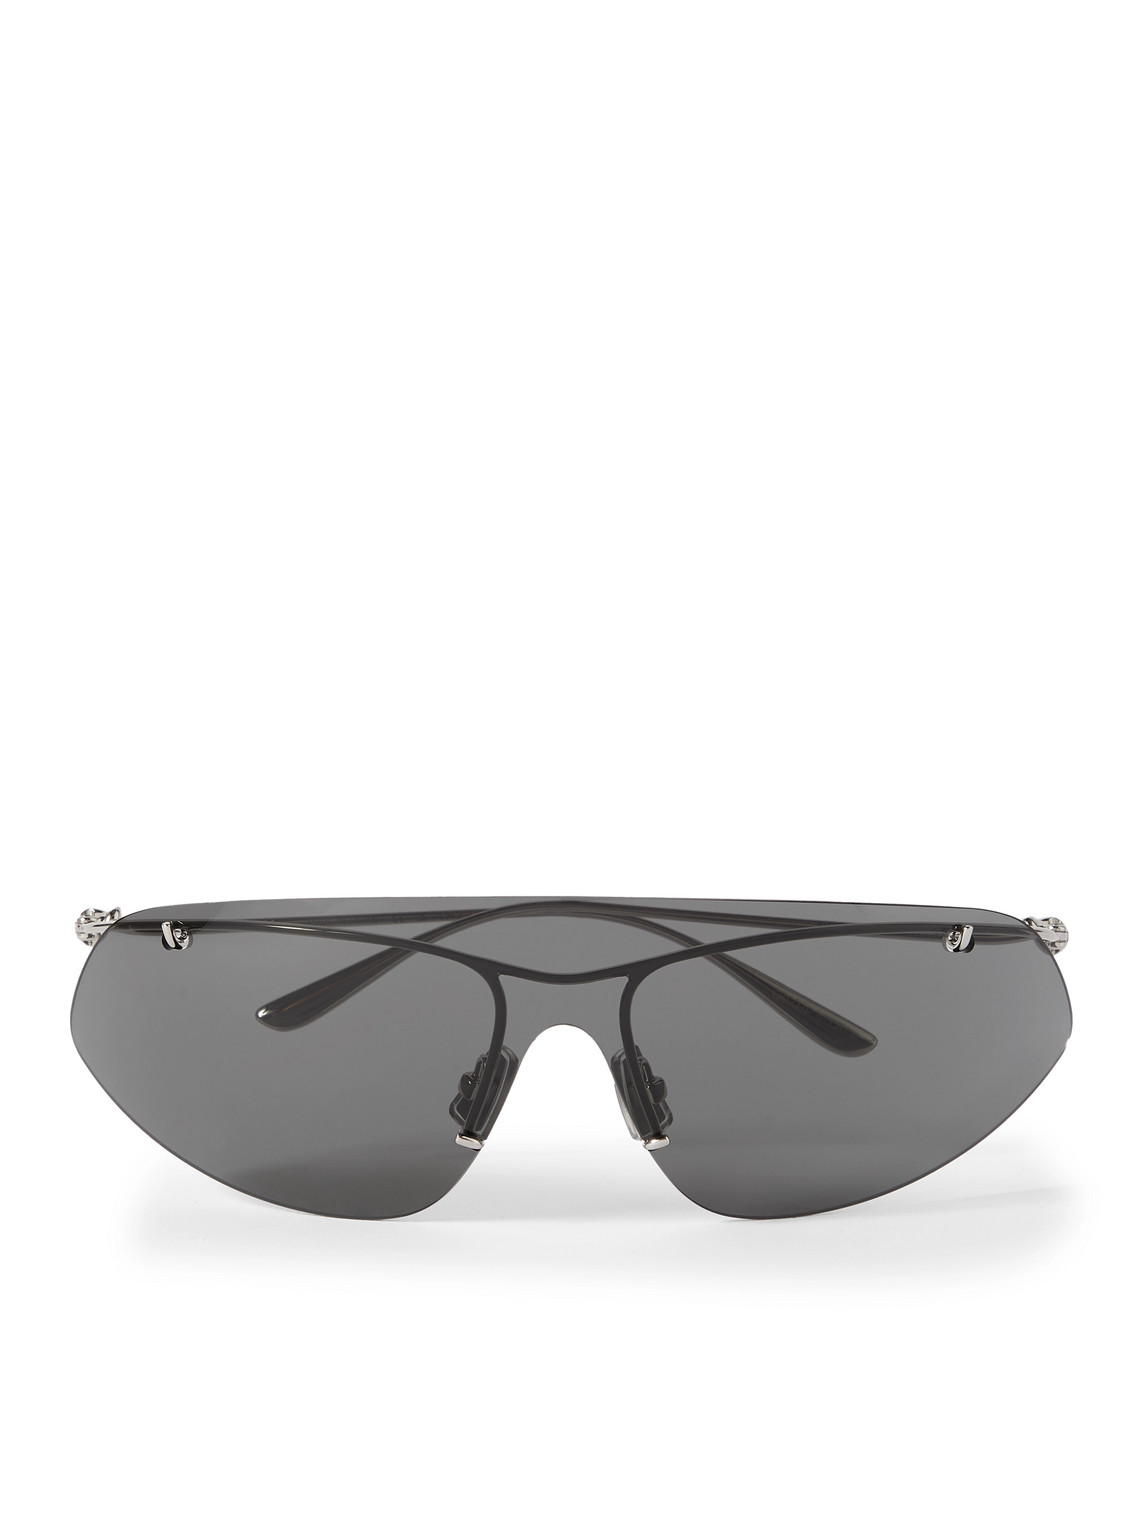 Bottega Veneta Silver Knot Shield Sunglasses